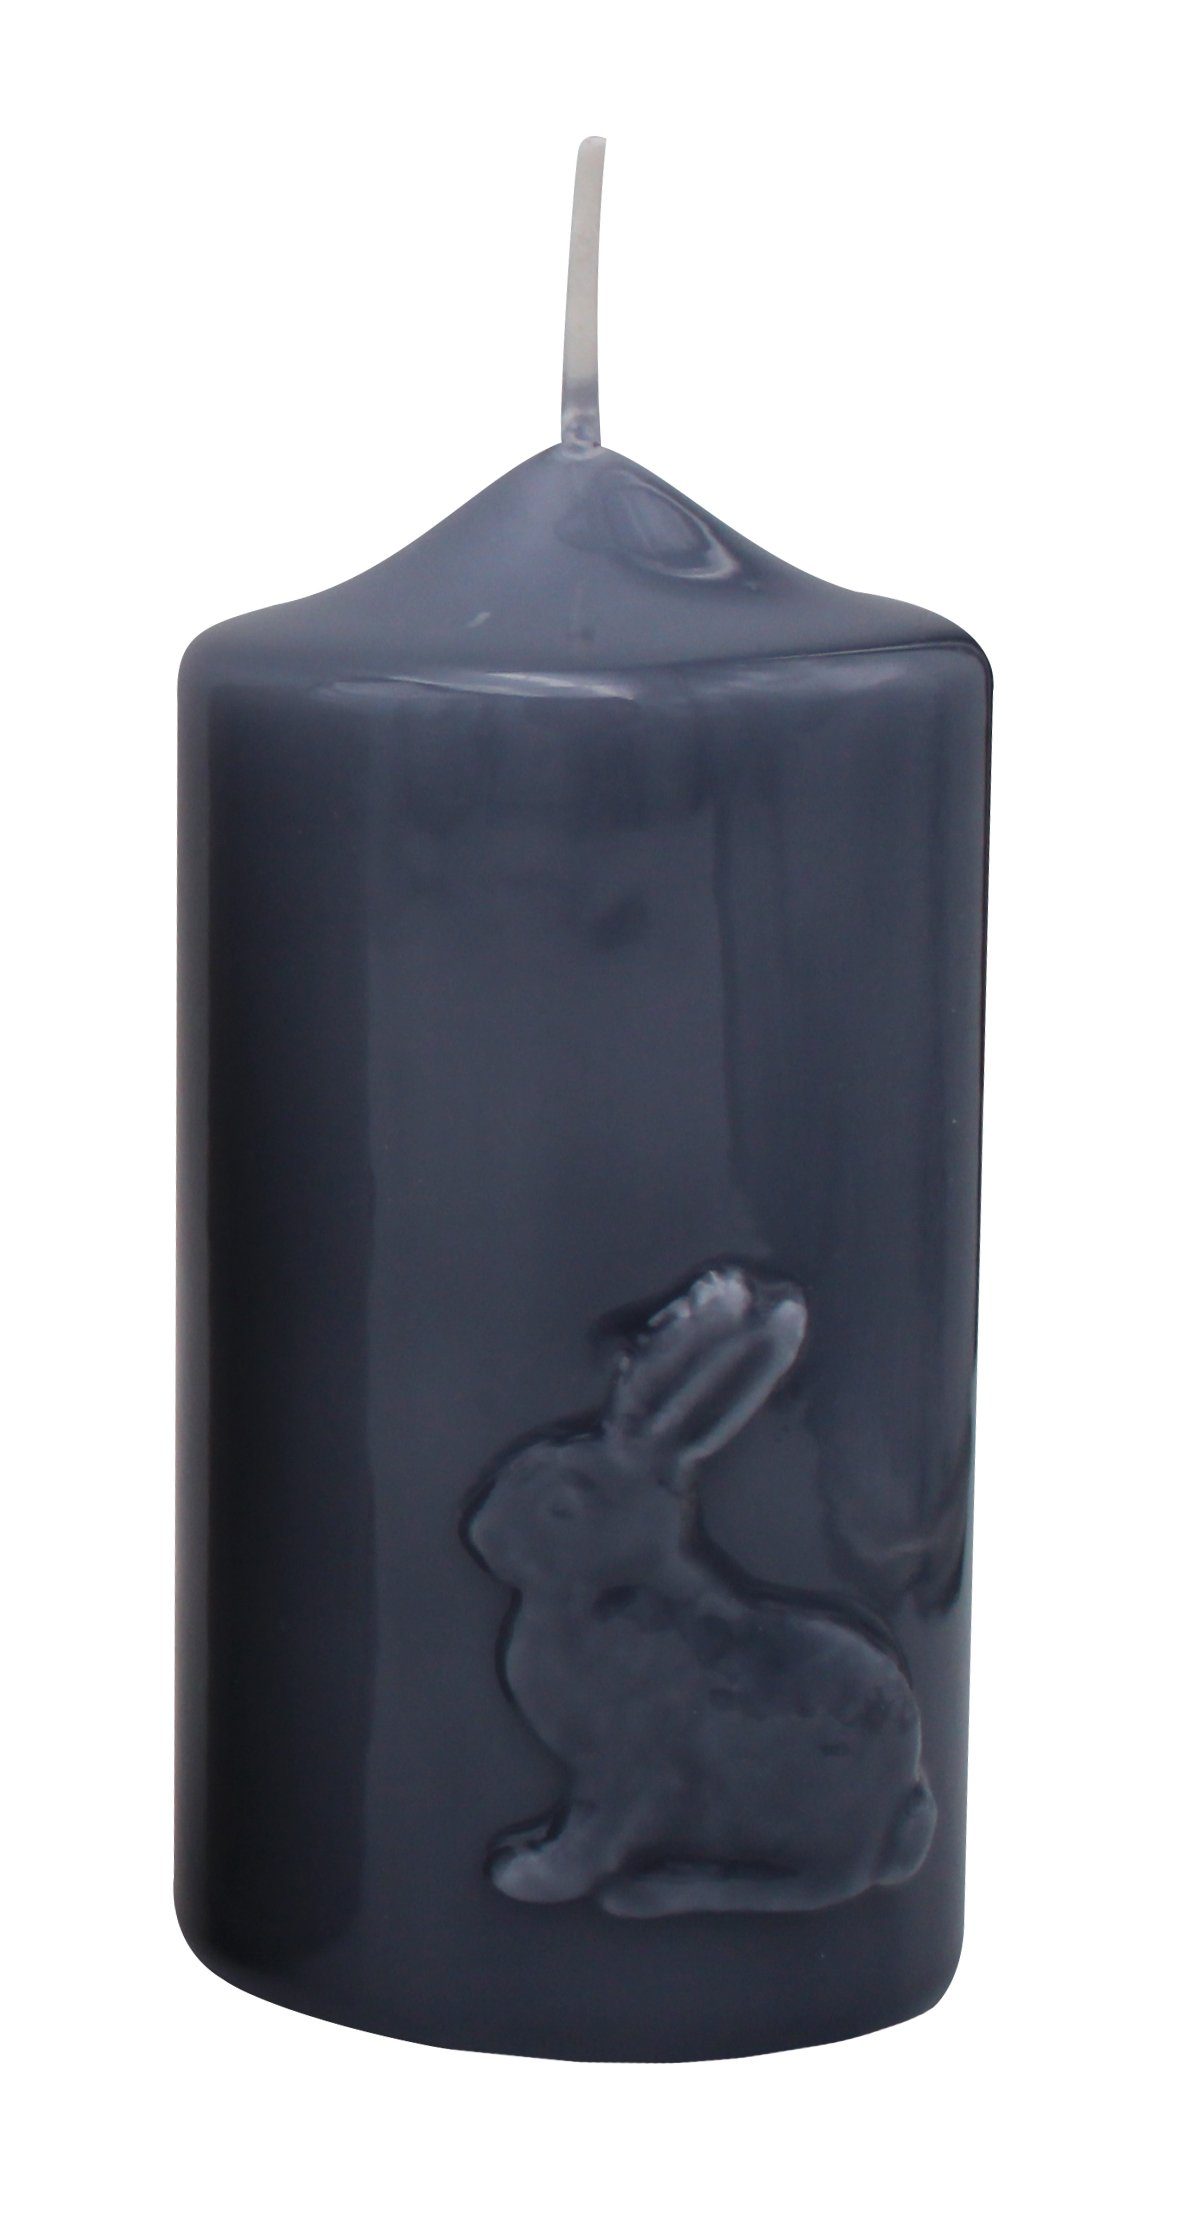 Kopschitz Kerzen Stumpenkerze Kerze Ostern "Hase" Blau-Grau gelackt 120 x Ø 60 mm, 1 Stück